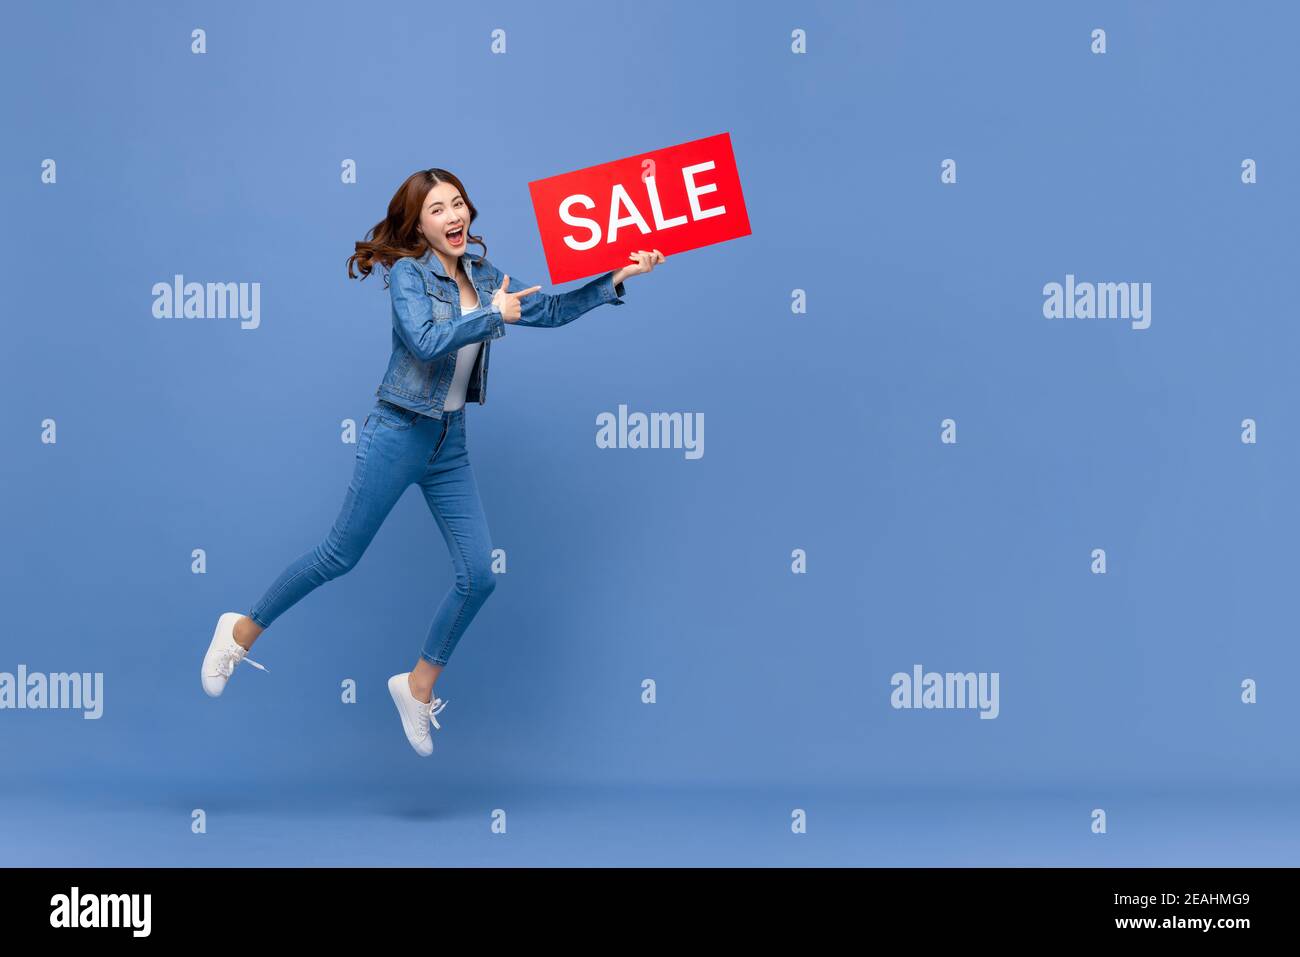 Femme asiatique excitée dans des vêtements Jean décontractés sautant avec du rouge affiche de solde isolée à la main sur fond bleu clair avec copier l'espace Banque D'Images